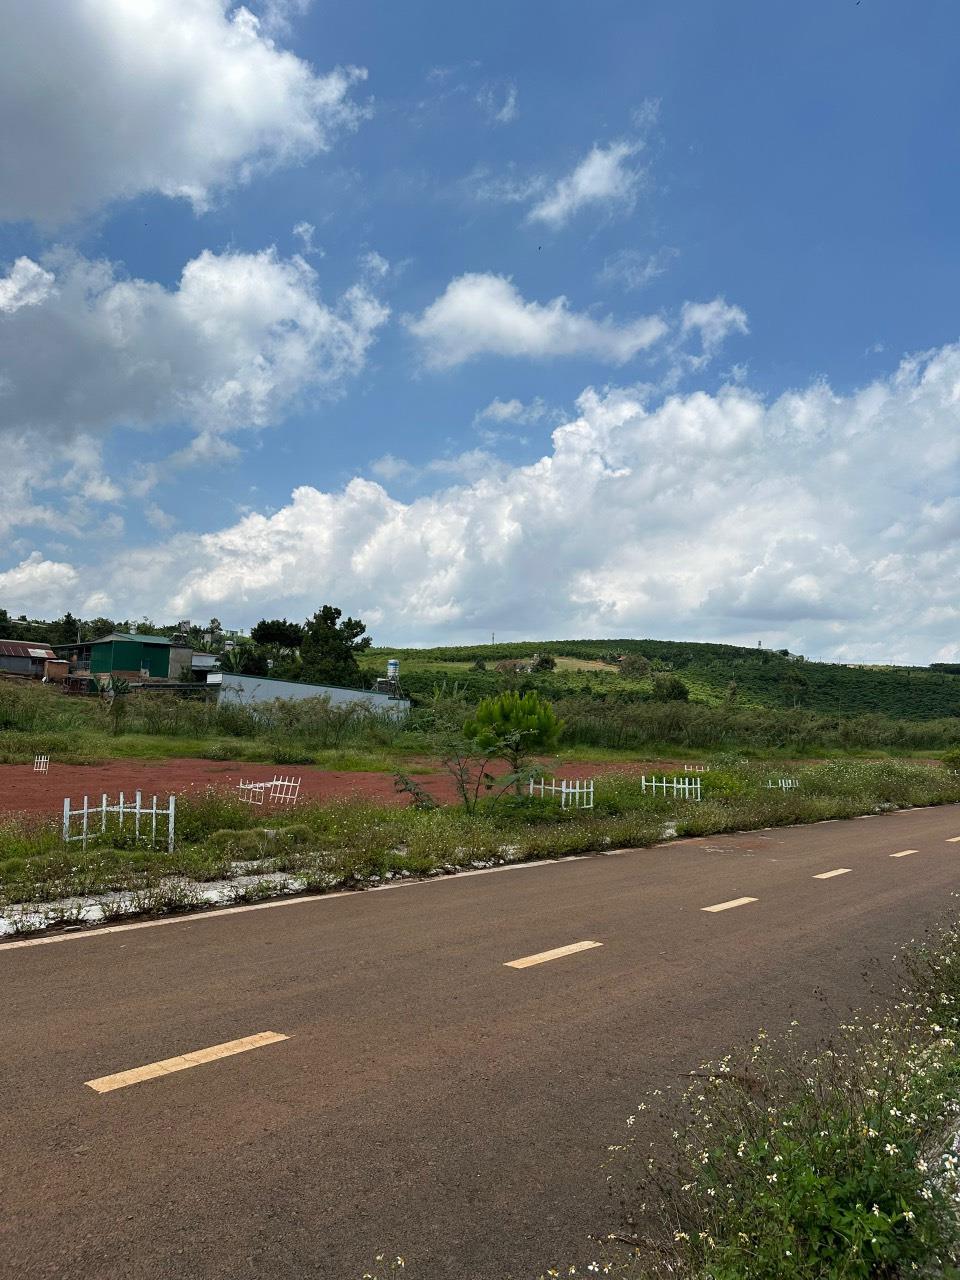 ĐẤT ĐẸP - GIÁ TỐT - Chính Chủ Cần Bán gấp Lô Đất đẹp tại xã Lộc Quảng, huyện Bảo Lâm, tỉnh Lâm Đồng - Ảnh 3